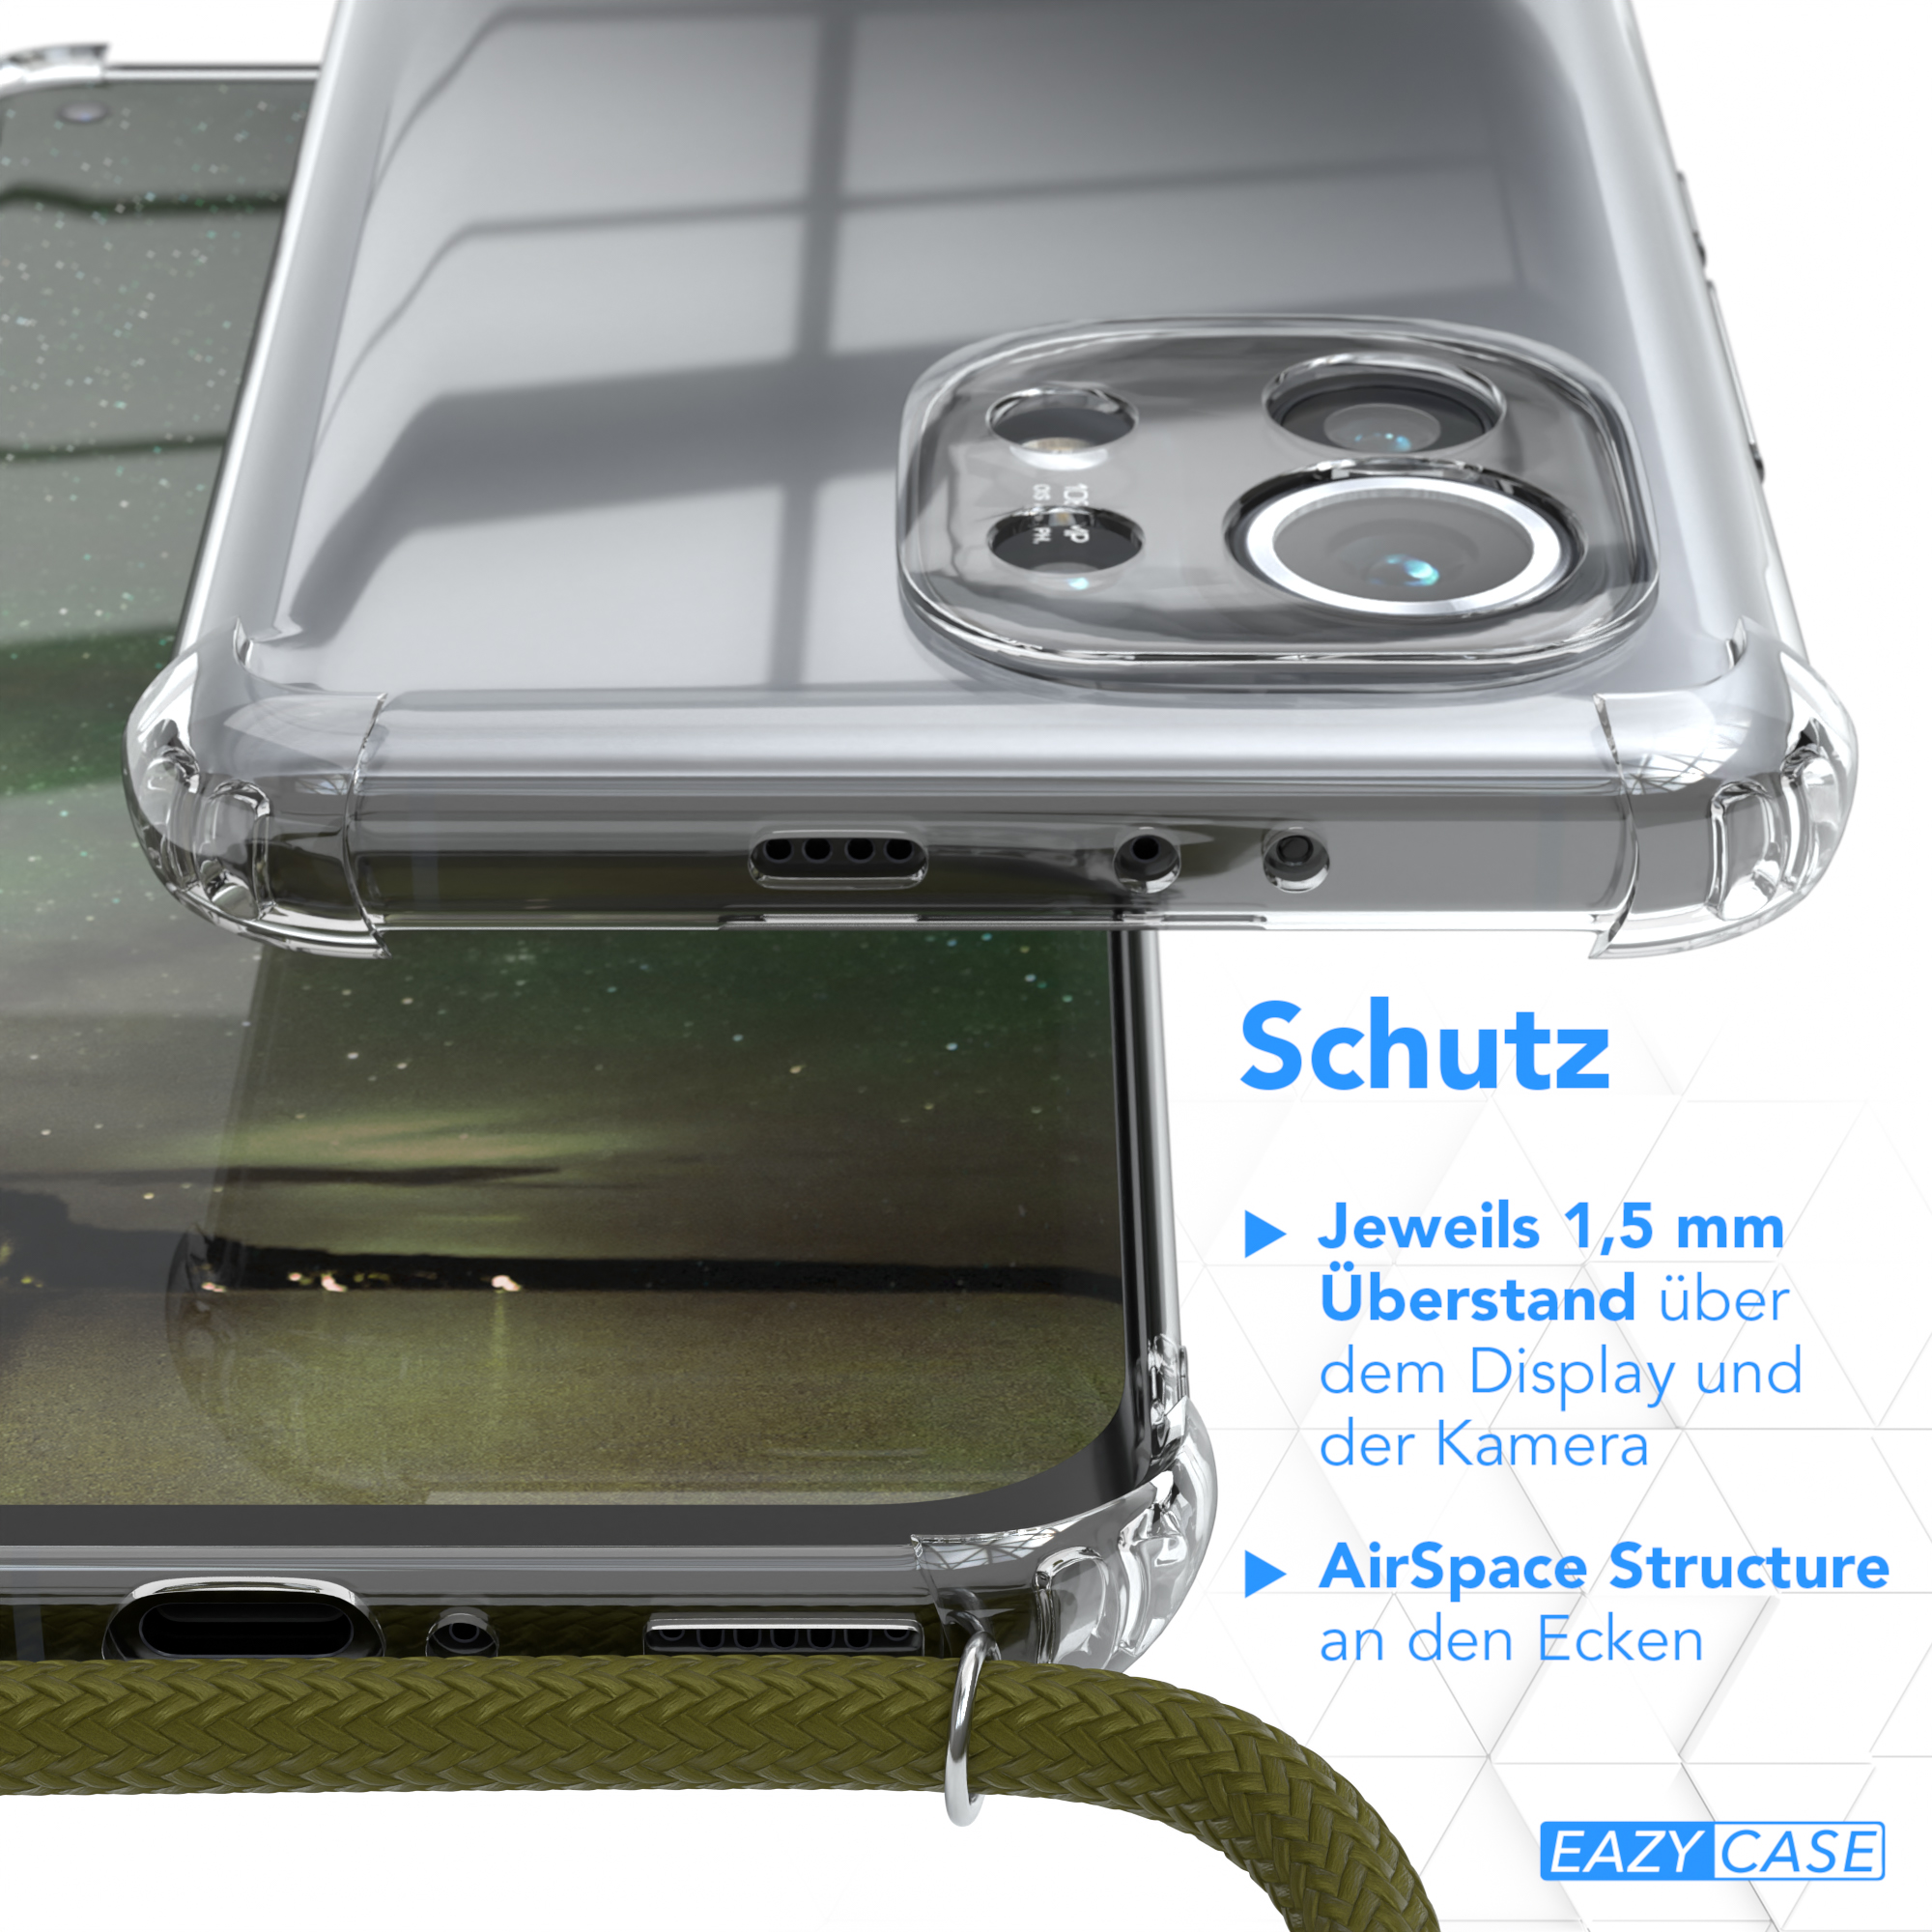 EAZY CASE mit Umhängetasche, Grün Mi Cover 11 5G, Olive Umhängeband, Clear Xiaomi